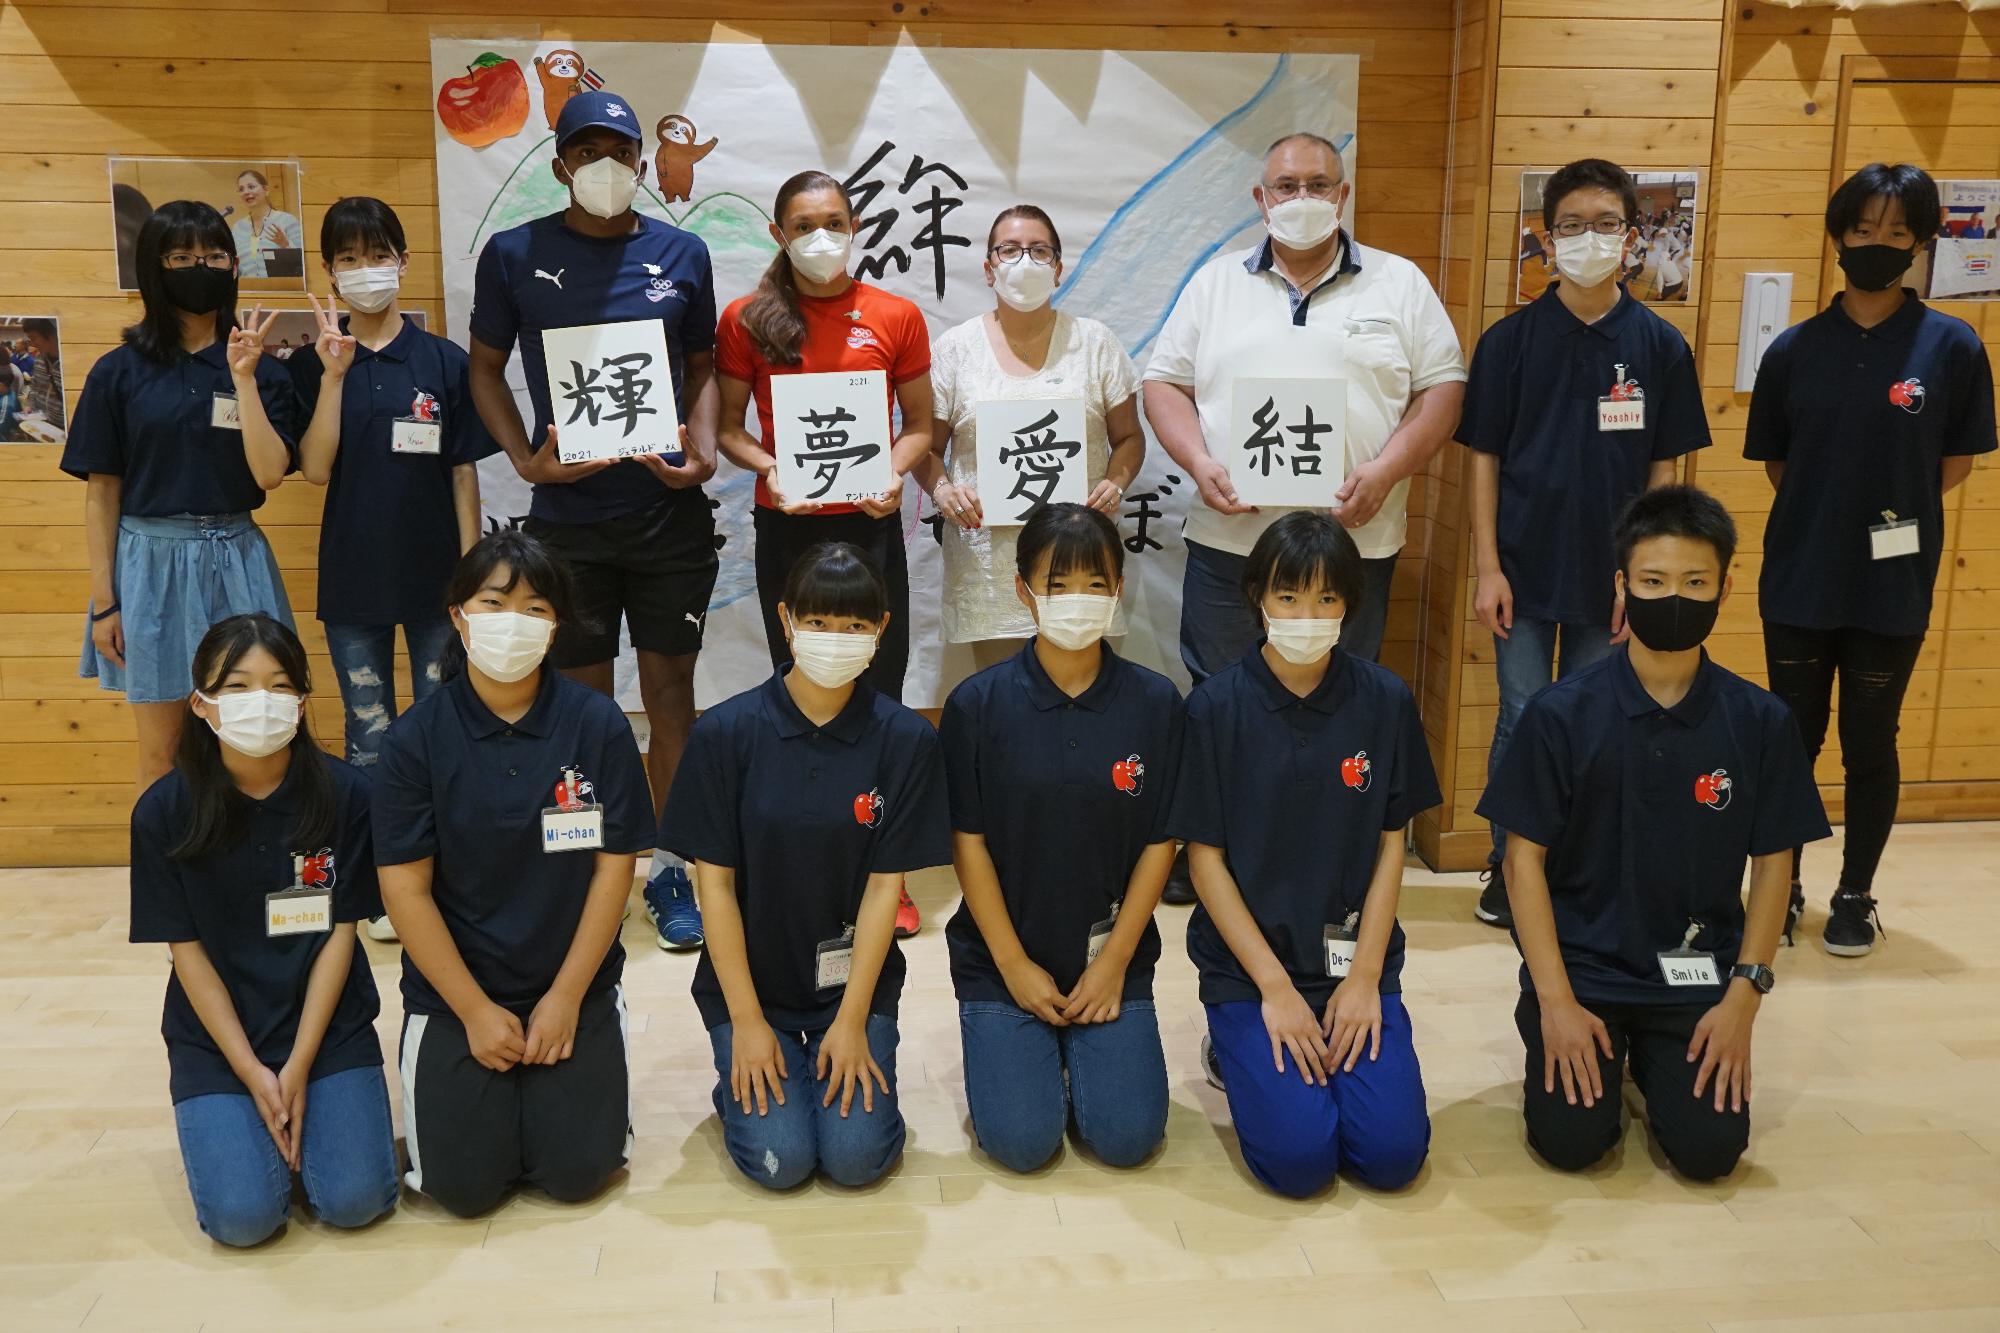 松川中学生10人がオリンピック選手団を歓迎